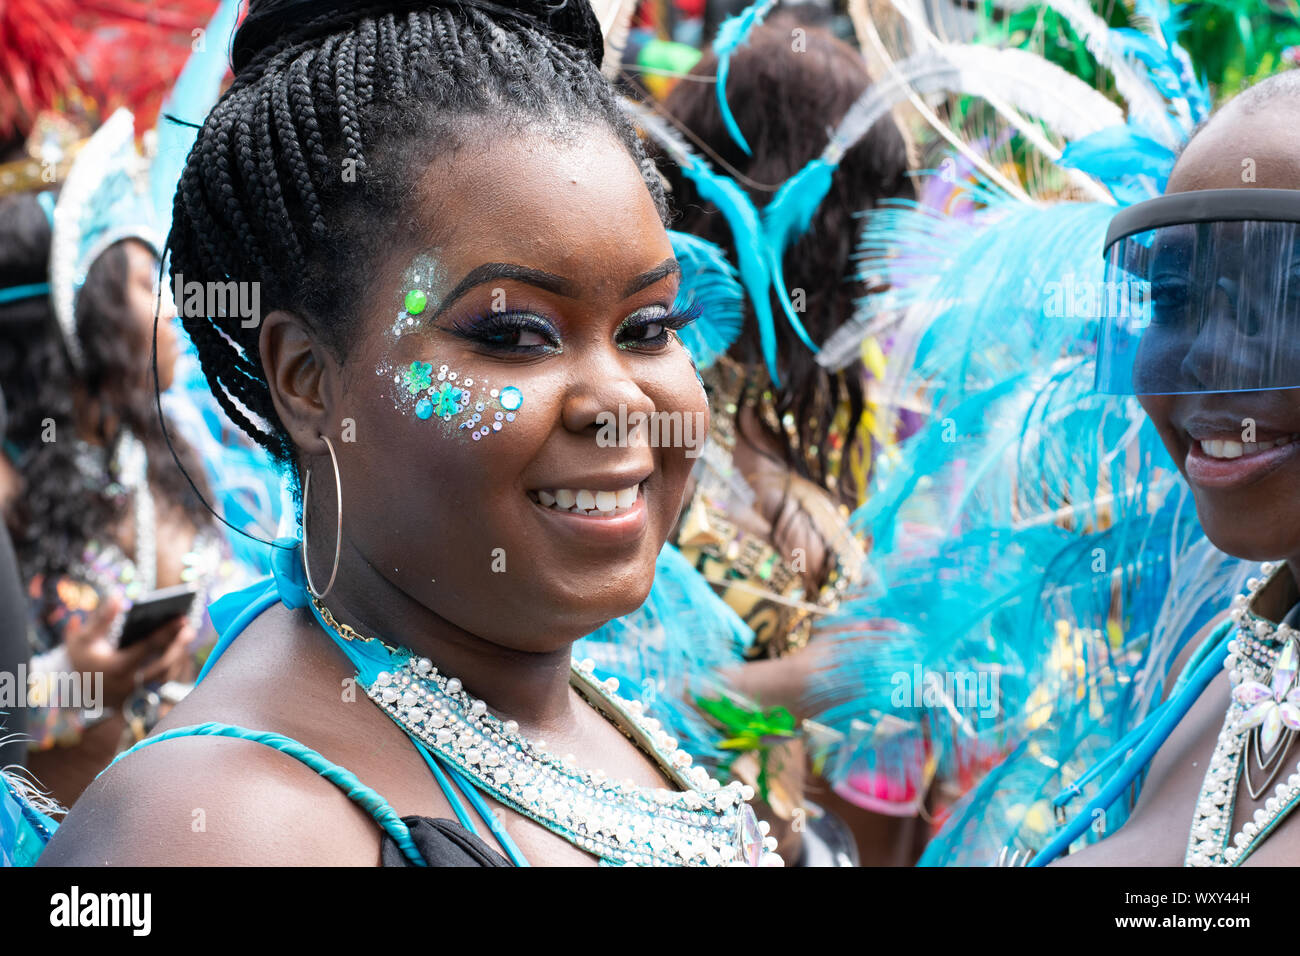 Eine lateinamerikanisch oder afrikanisch aussehende Frau lächelt in die Kamera. Sie nimmt Teil an der West Indian Day Parade di New York City Foto Stock